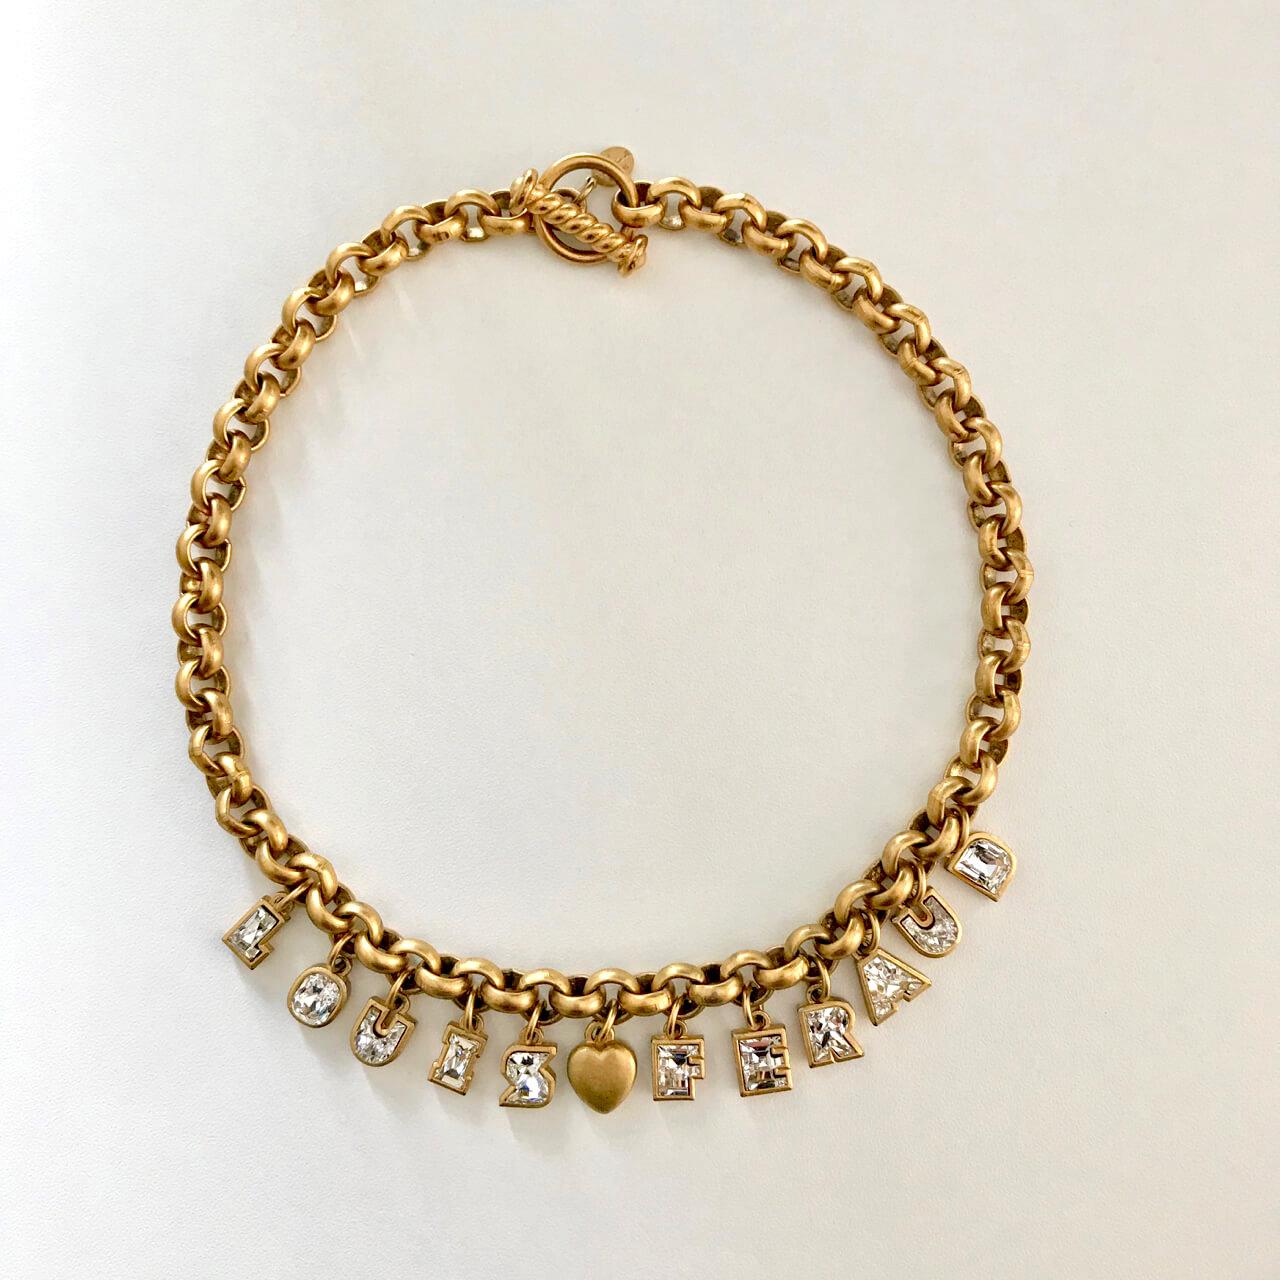 Un ensemble rare de collier et bracelet Louis Féraud des années 1980, comprenant chacun une chaîne massive en or, des lettres de breloque 